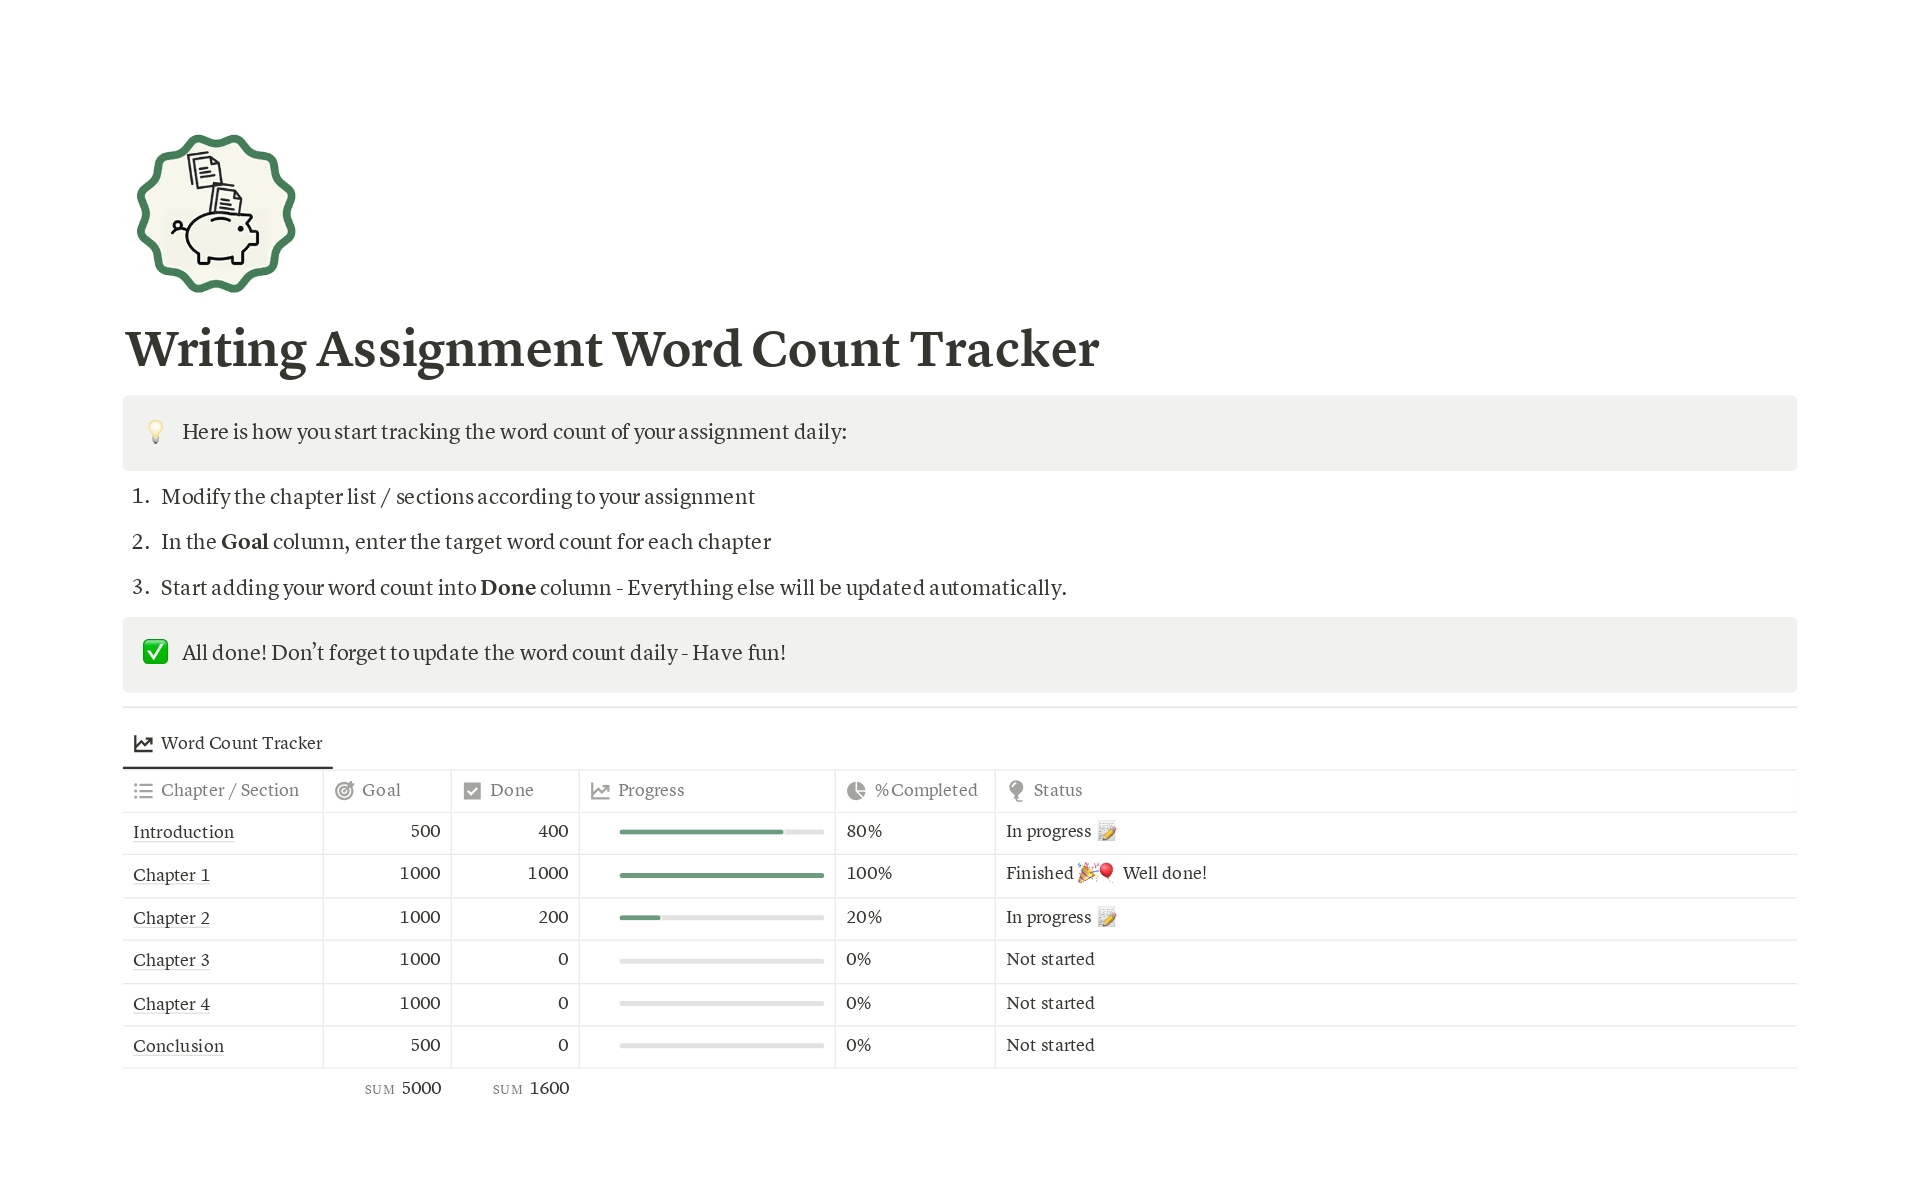 En förhandsgranskning av mallen för Writing Assignment Word Count Tracker